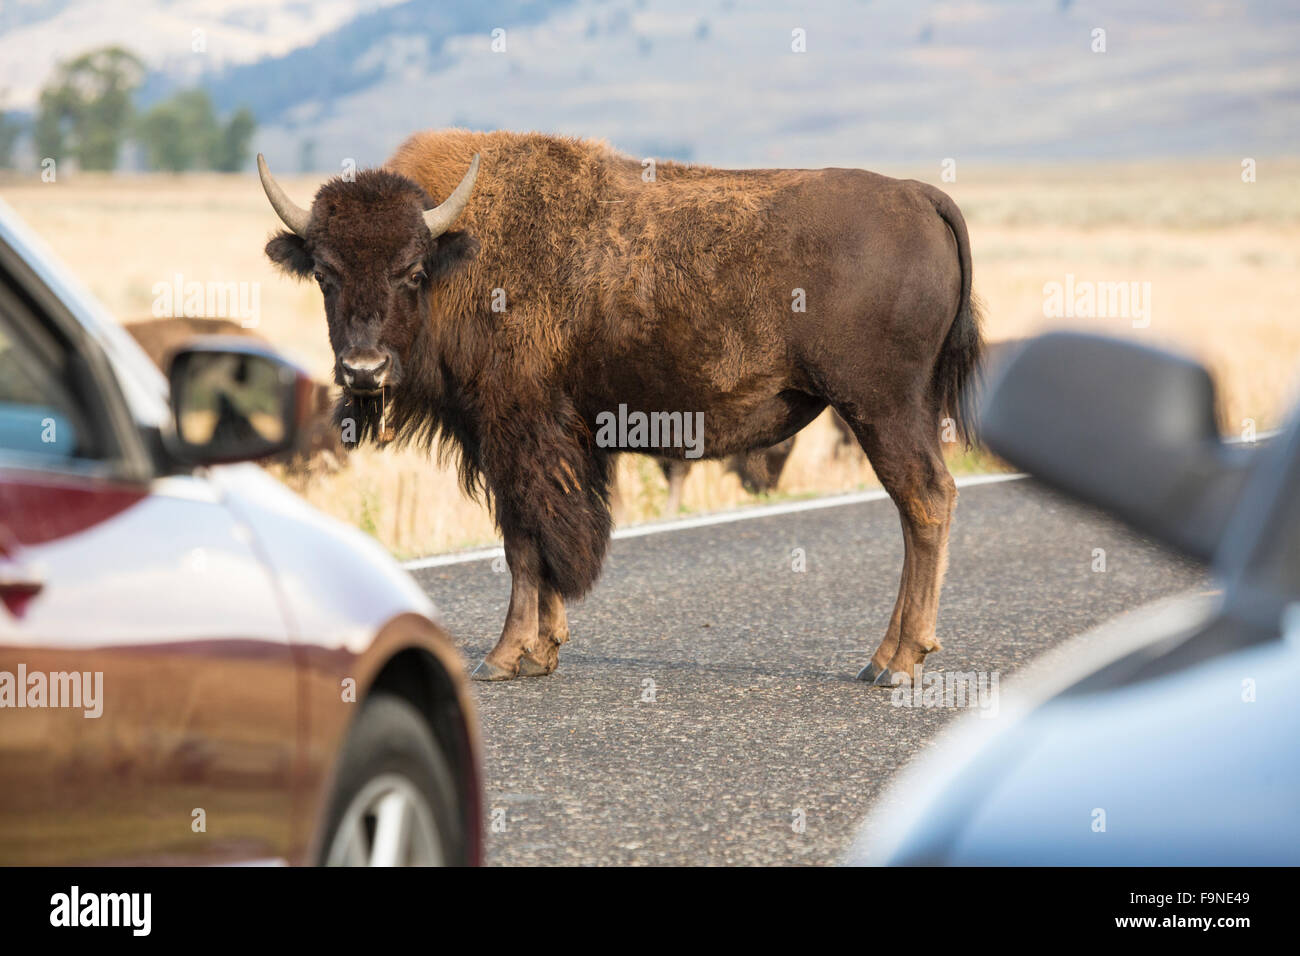 Bison Debout dans milieu de la route, bloquant la circulation, avec vue partielle de deux voitures dans le Parc National de Yellowstone, Wyoming. Banque D'Images